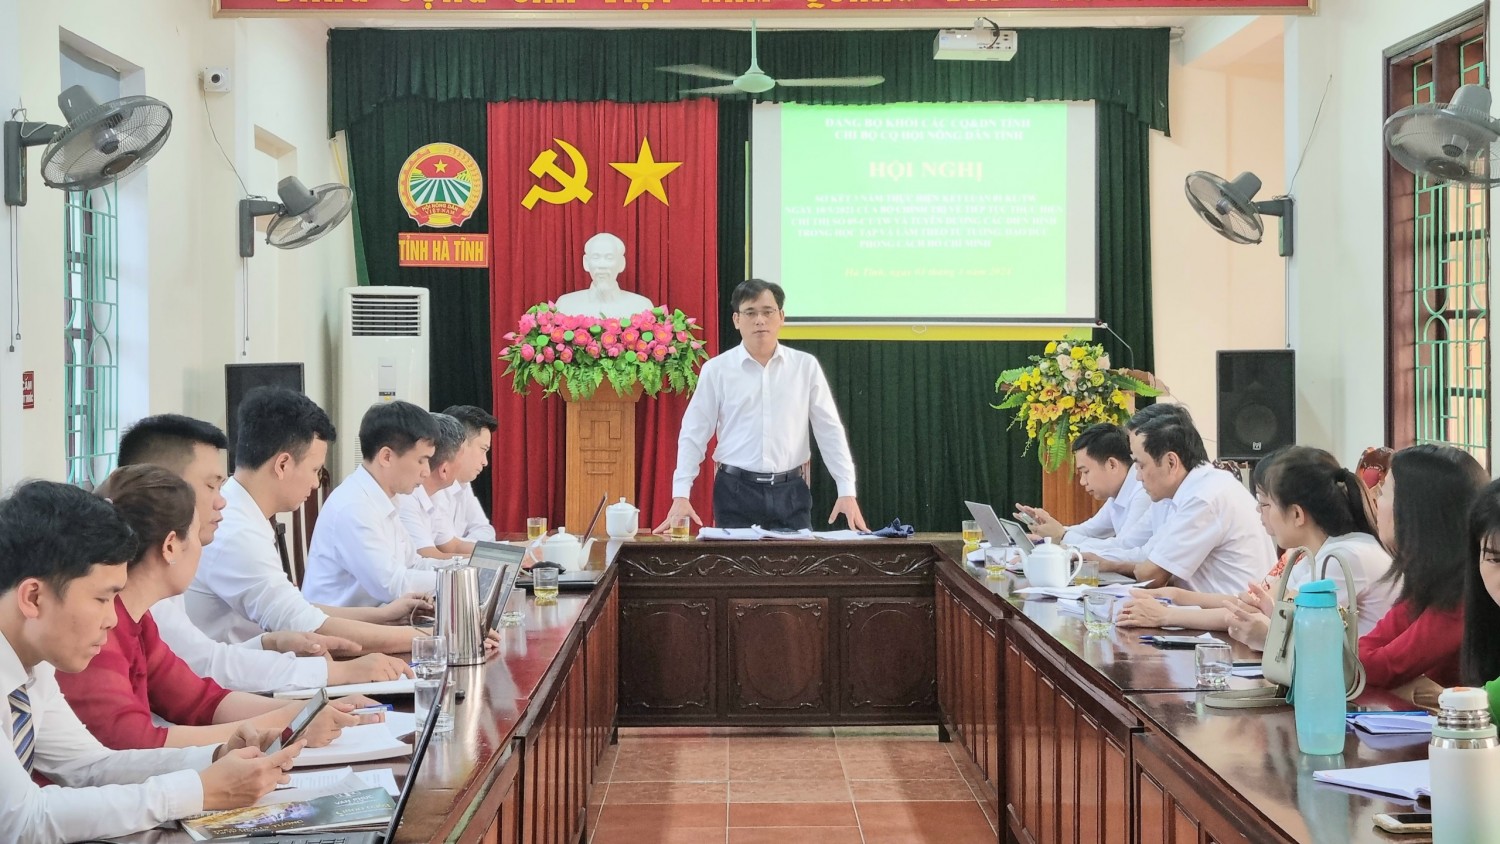 Chi bộ cơ quan Hội Nông dân tỉnh sơ kết 3 năm thực hiện Kết luận số 01- KL/TW của Bộ Chính trị “về đẩy mạnh học tập và làm theo tư tưởng, đạo đức, phong cách Hồ Chí Minh”